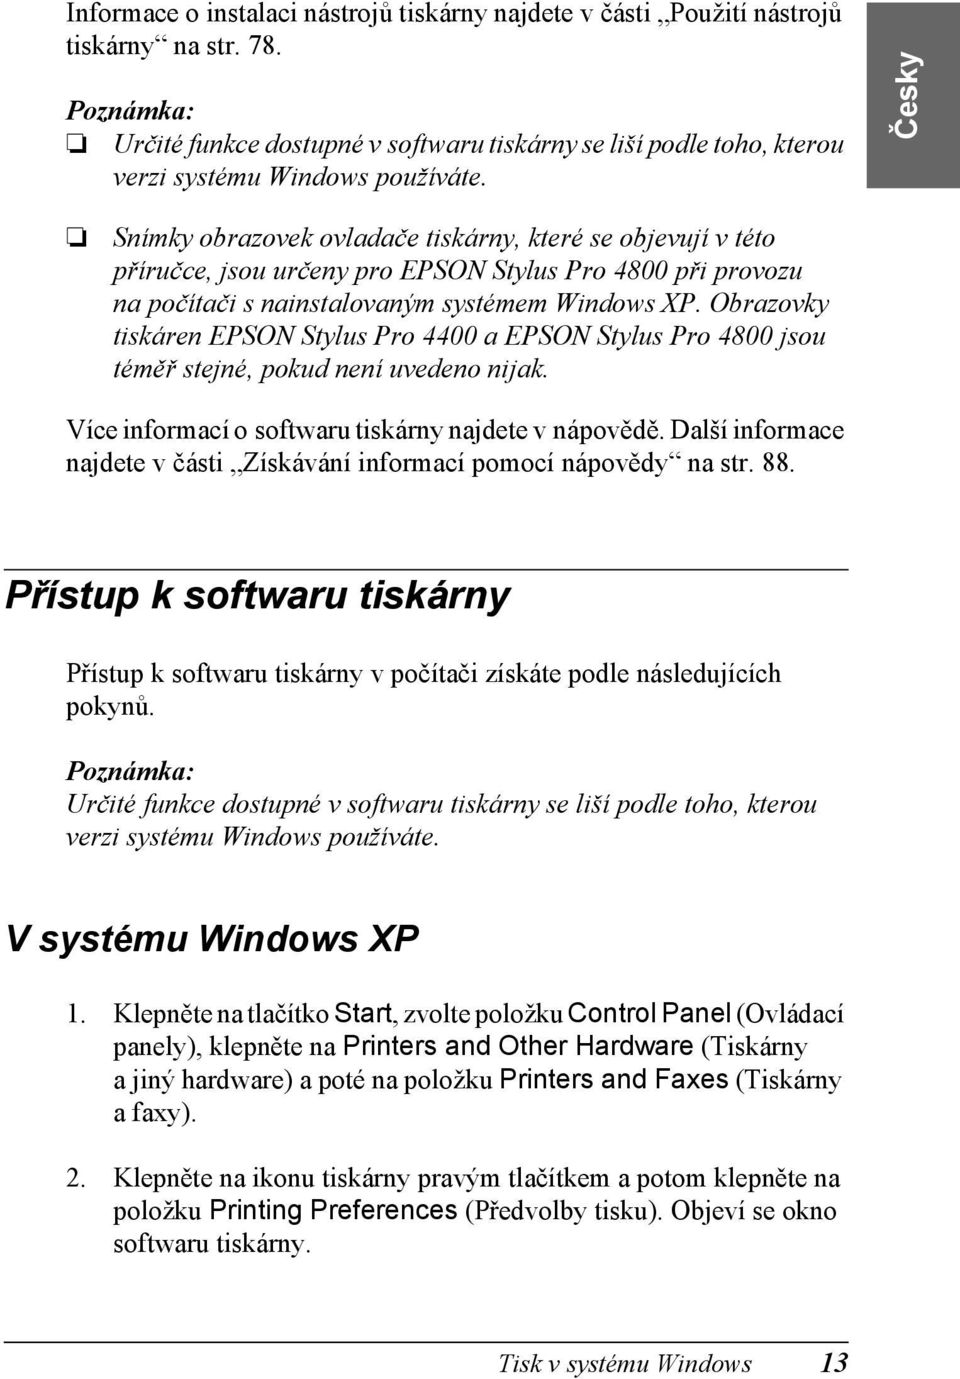 Snímky obrazovek ovladače tiskárny, které se objevují v této příručce, jsou určeny pro EPSON Stylus Pro 4800 při provozu na počítači s nainstalovaným systémem Windows XP.